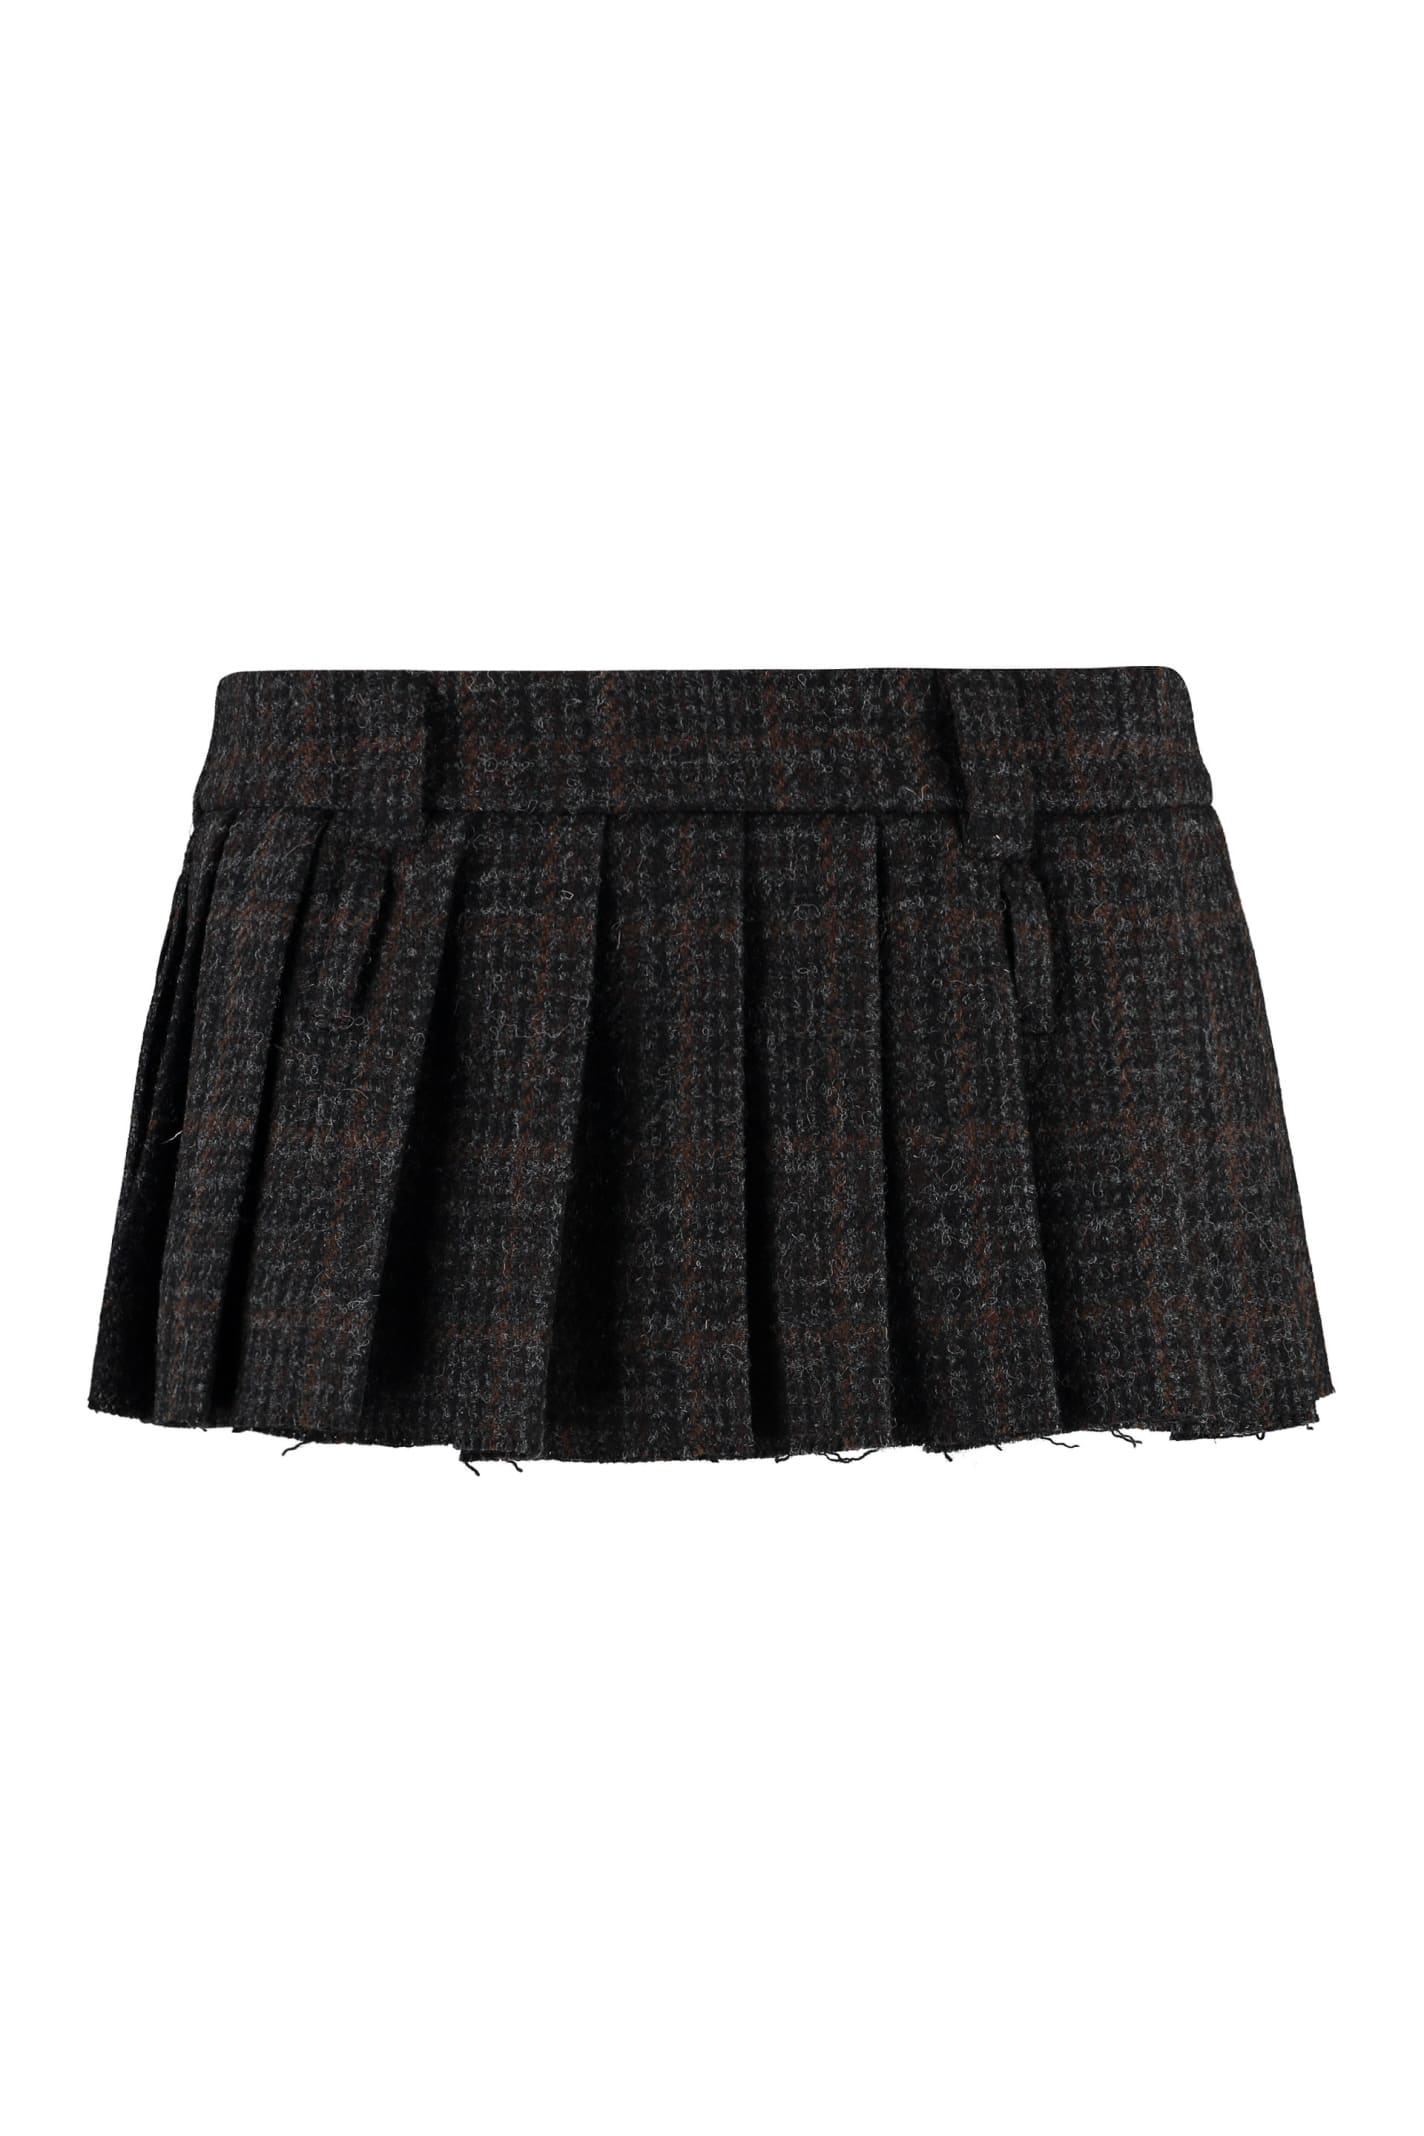 Miu Miu Pleated Mini Skirt